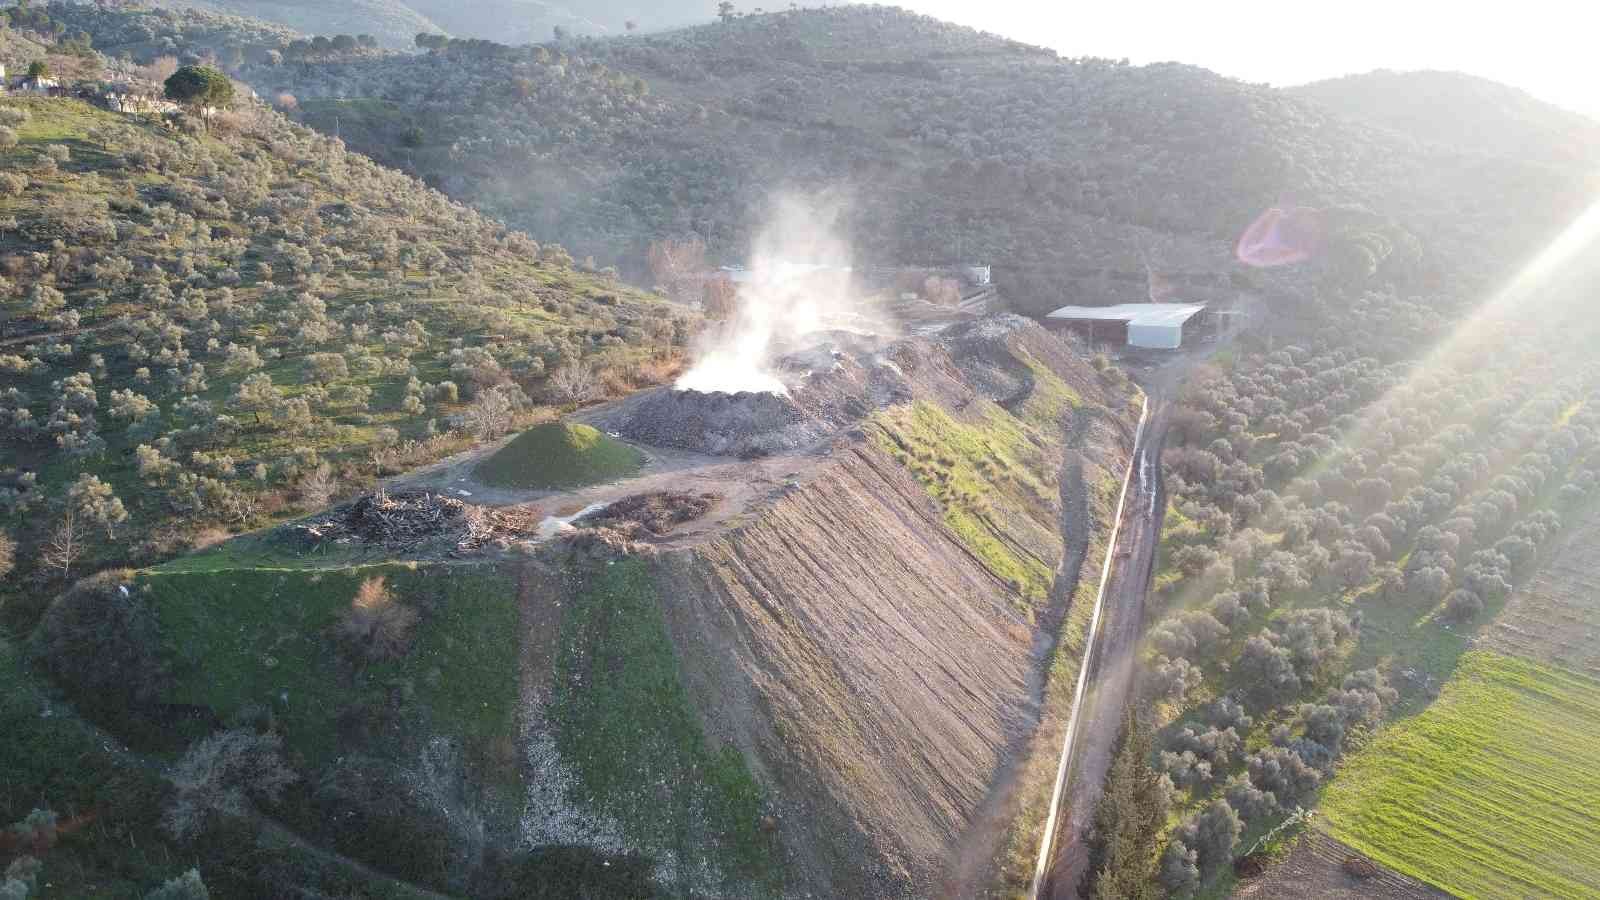 Tire’de madende zehirlenen 2 işçi hastaneye kaldırıldı #izmir